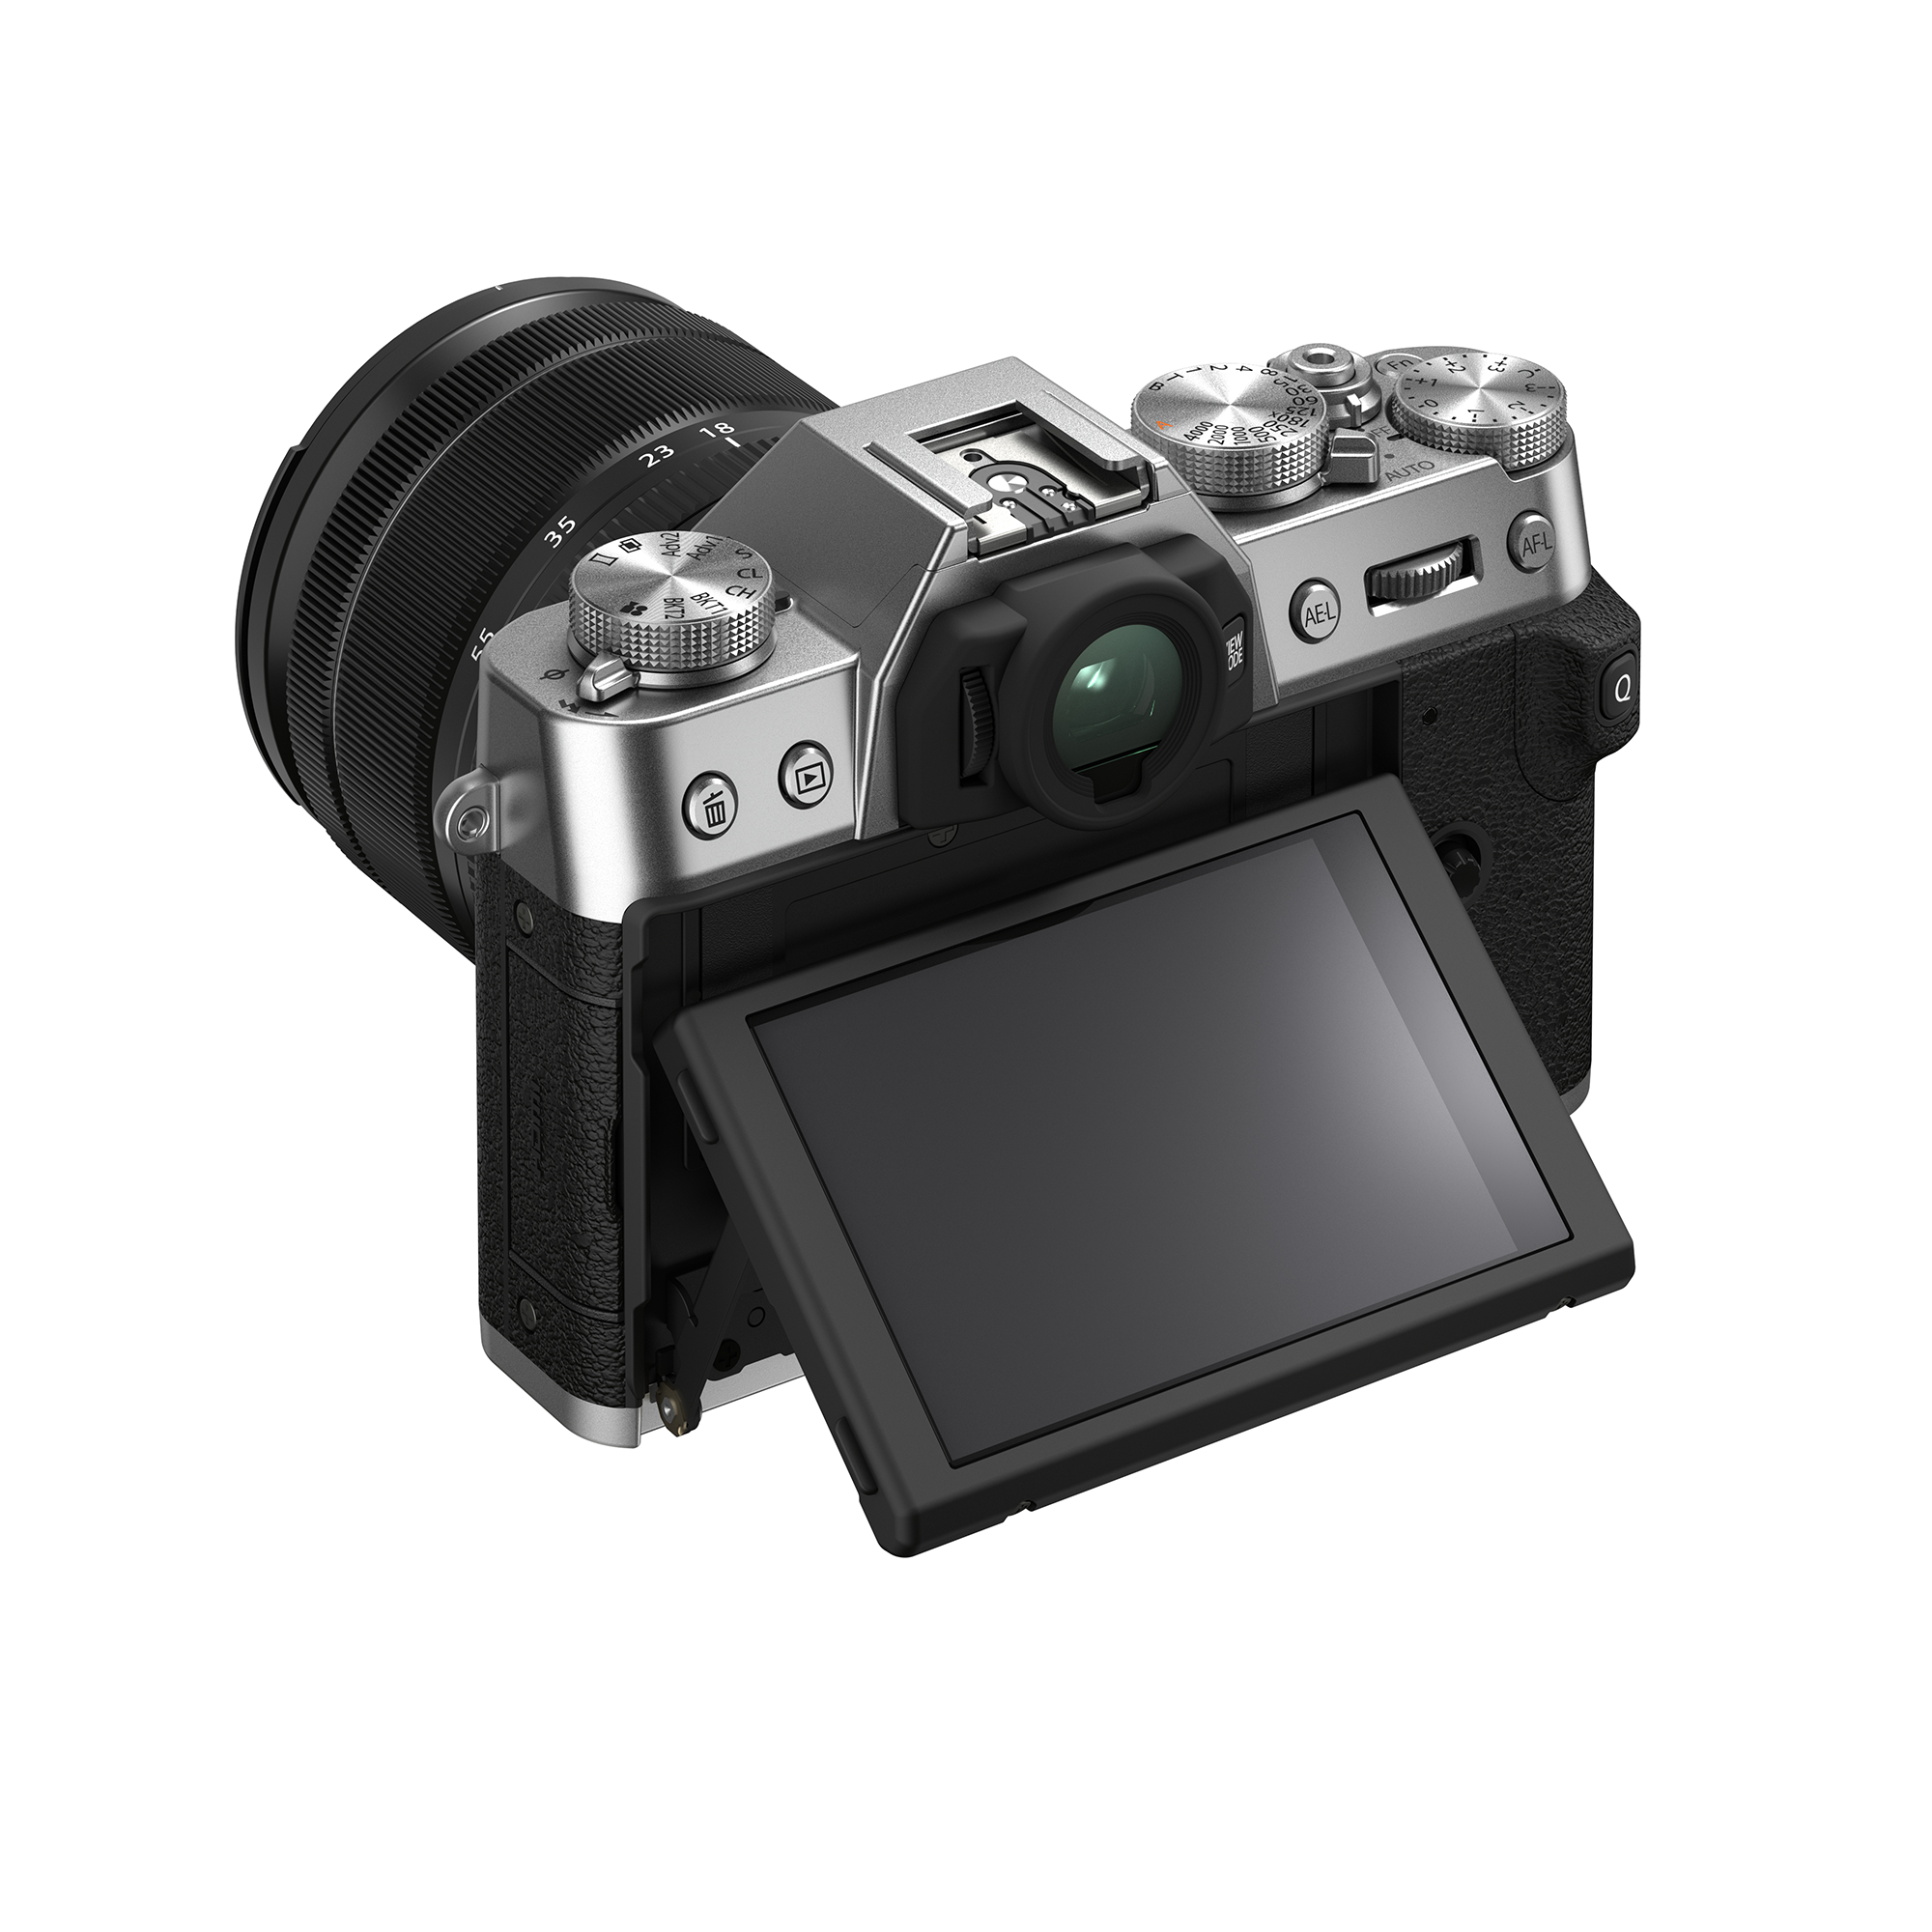 Caméra sans miroir Fujifilm X-T30 II Boîtier, avec le kit d'objectif XF18-55 mm,